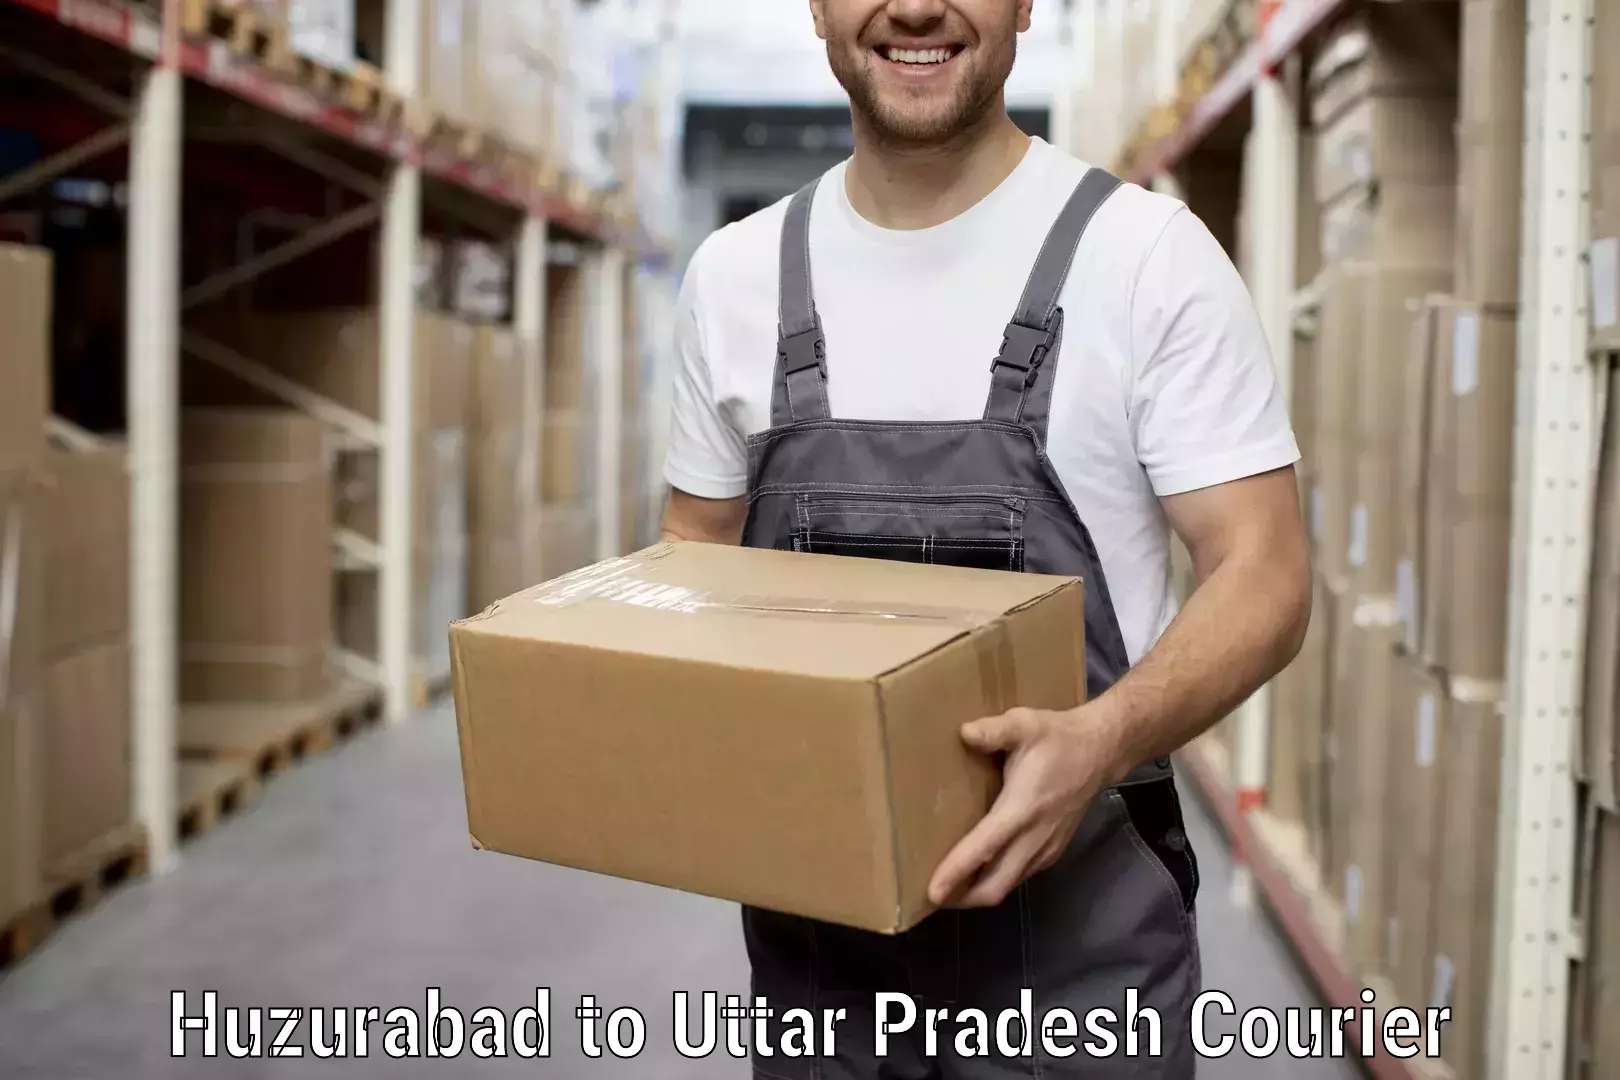 Household goods transporters Huzurabad to IIIT Lucknow